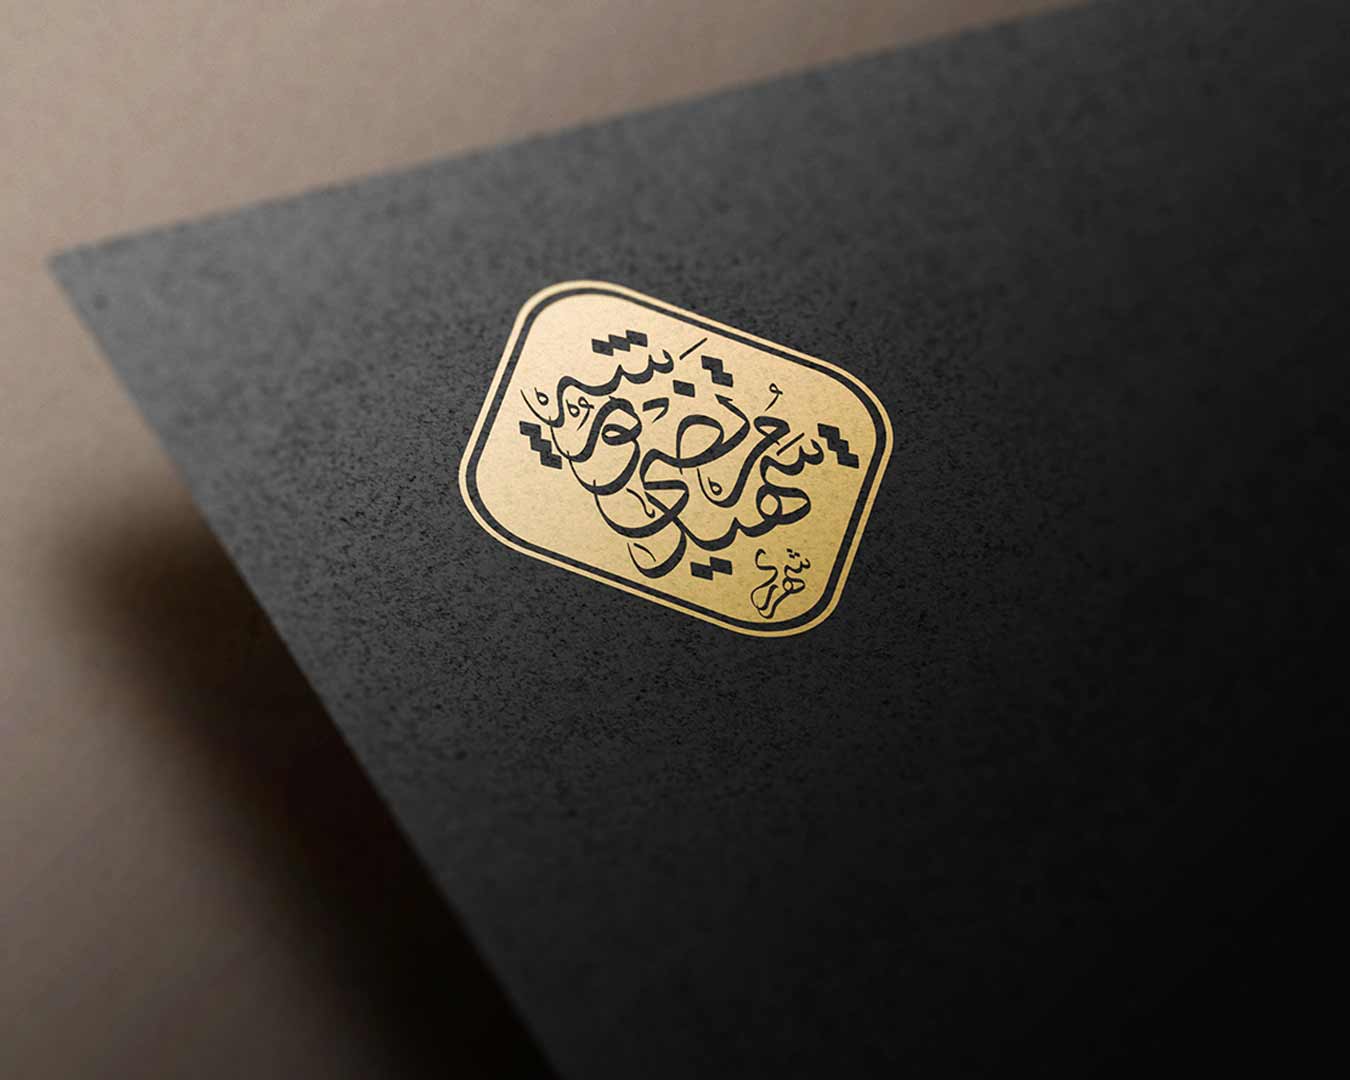 تایپوگرافی و طراحی لوگو گروه فرهنگی شهید مرتضی پورشه